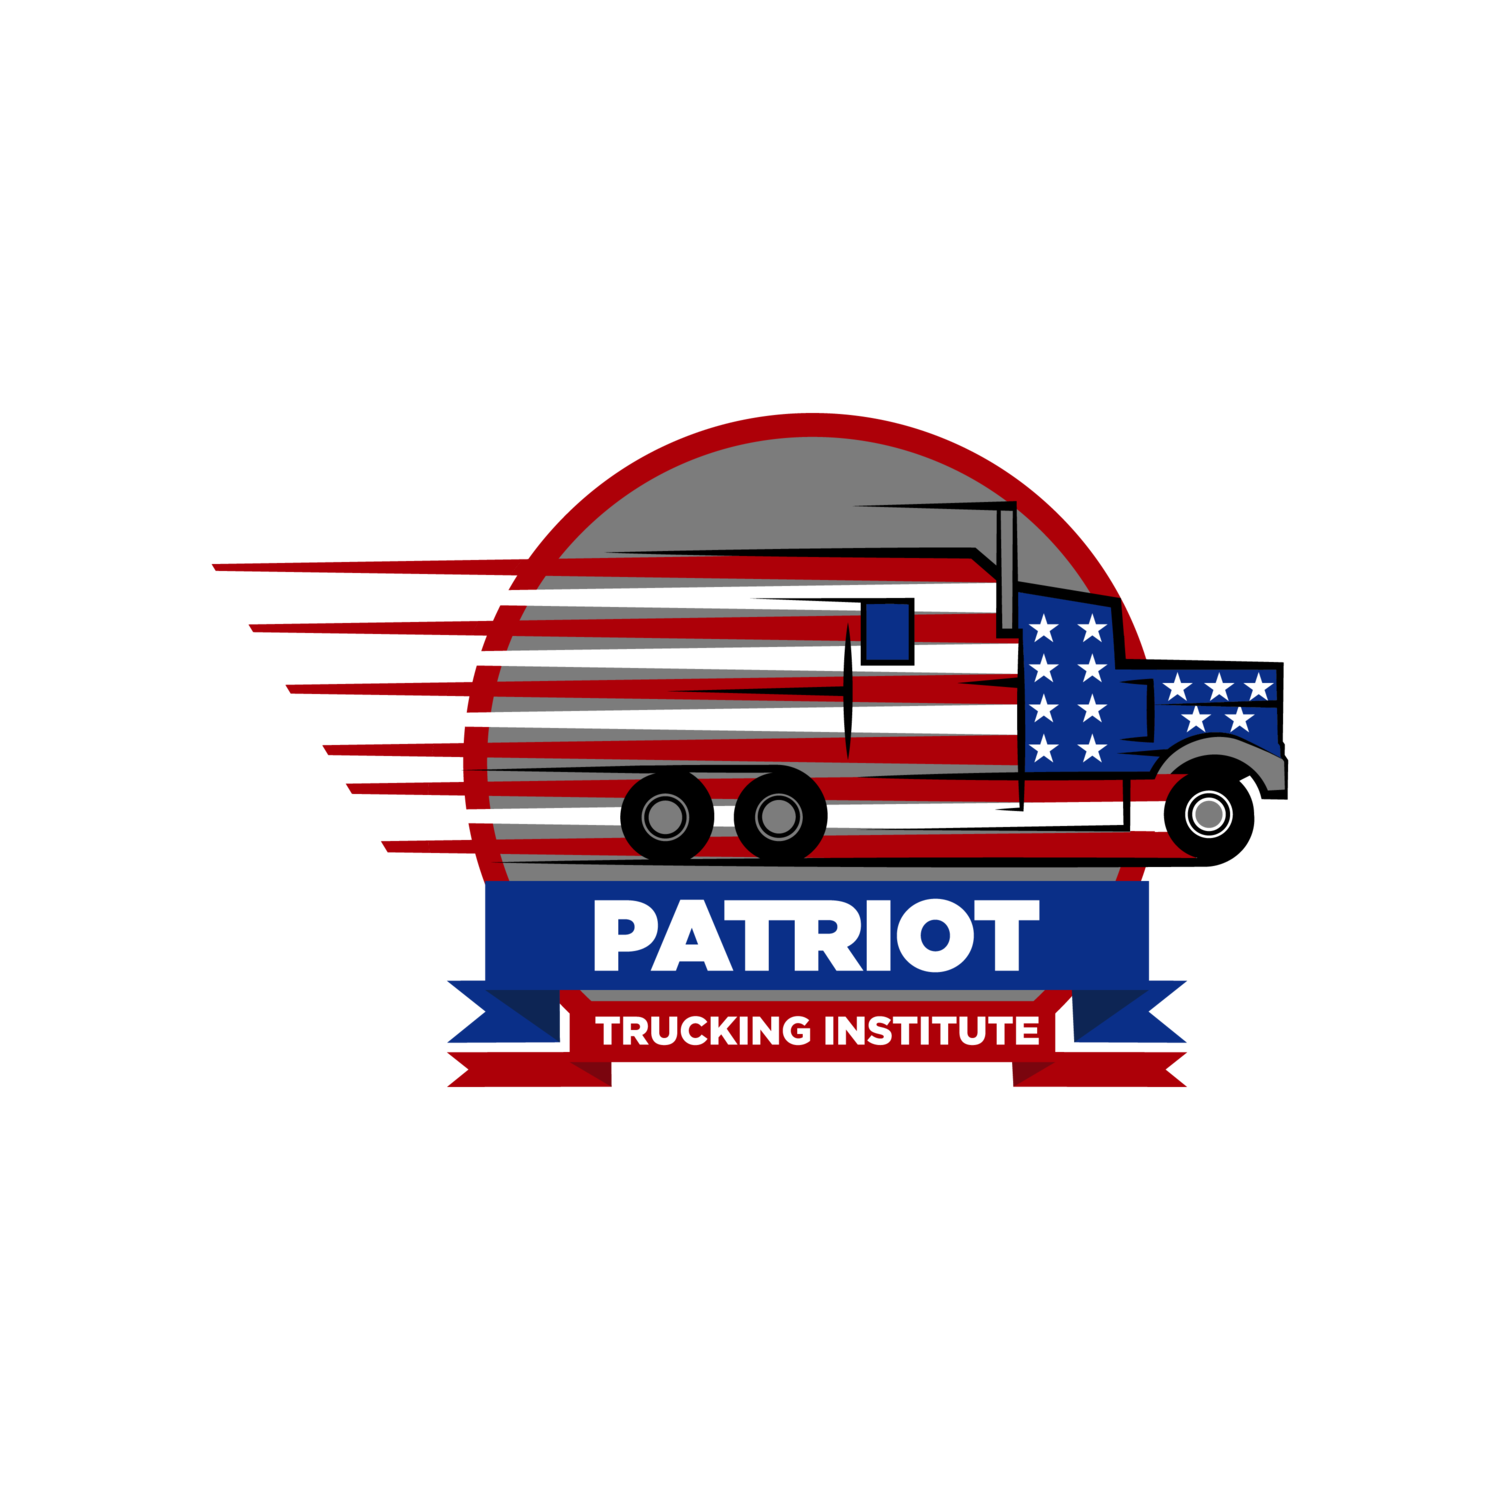 Patriot Trucking Institute